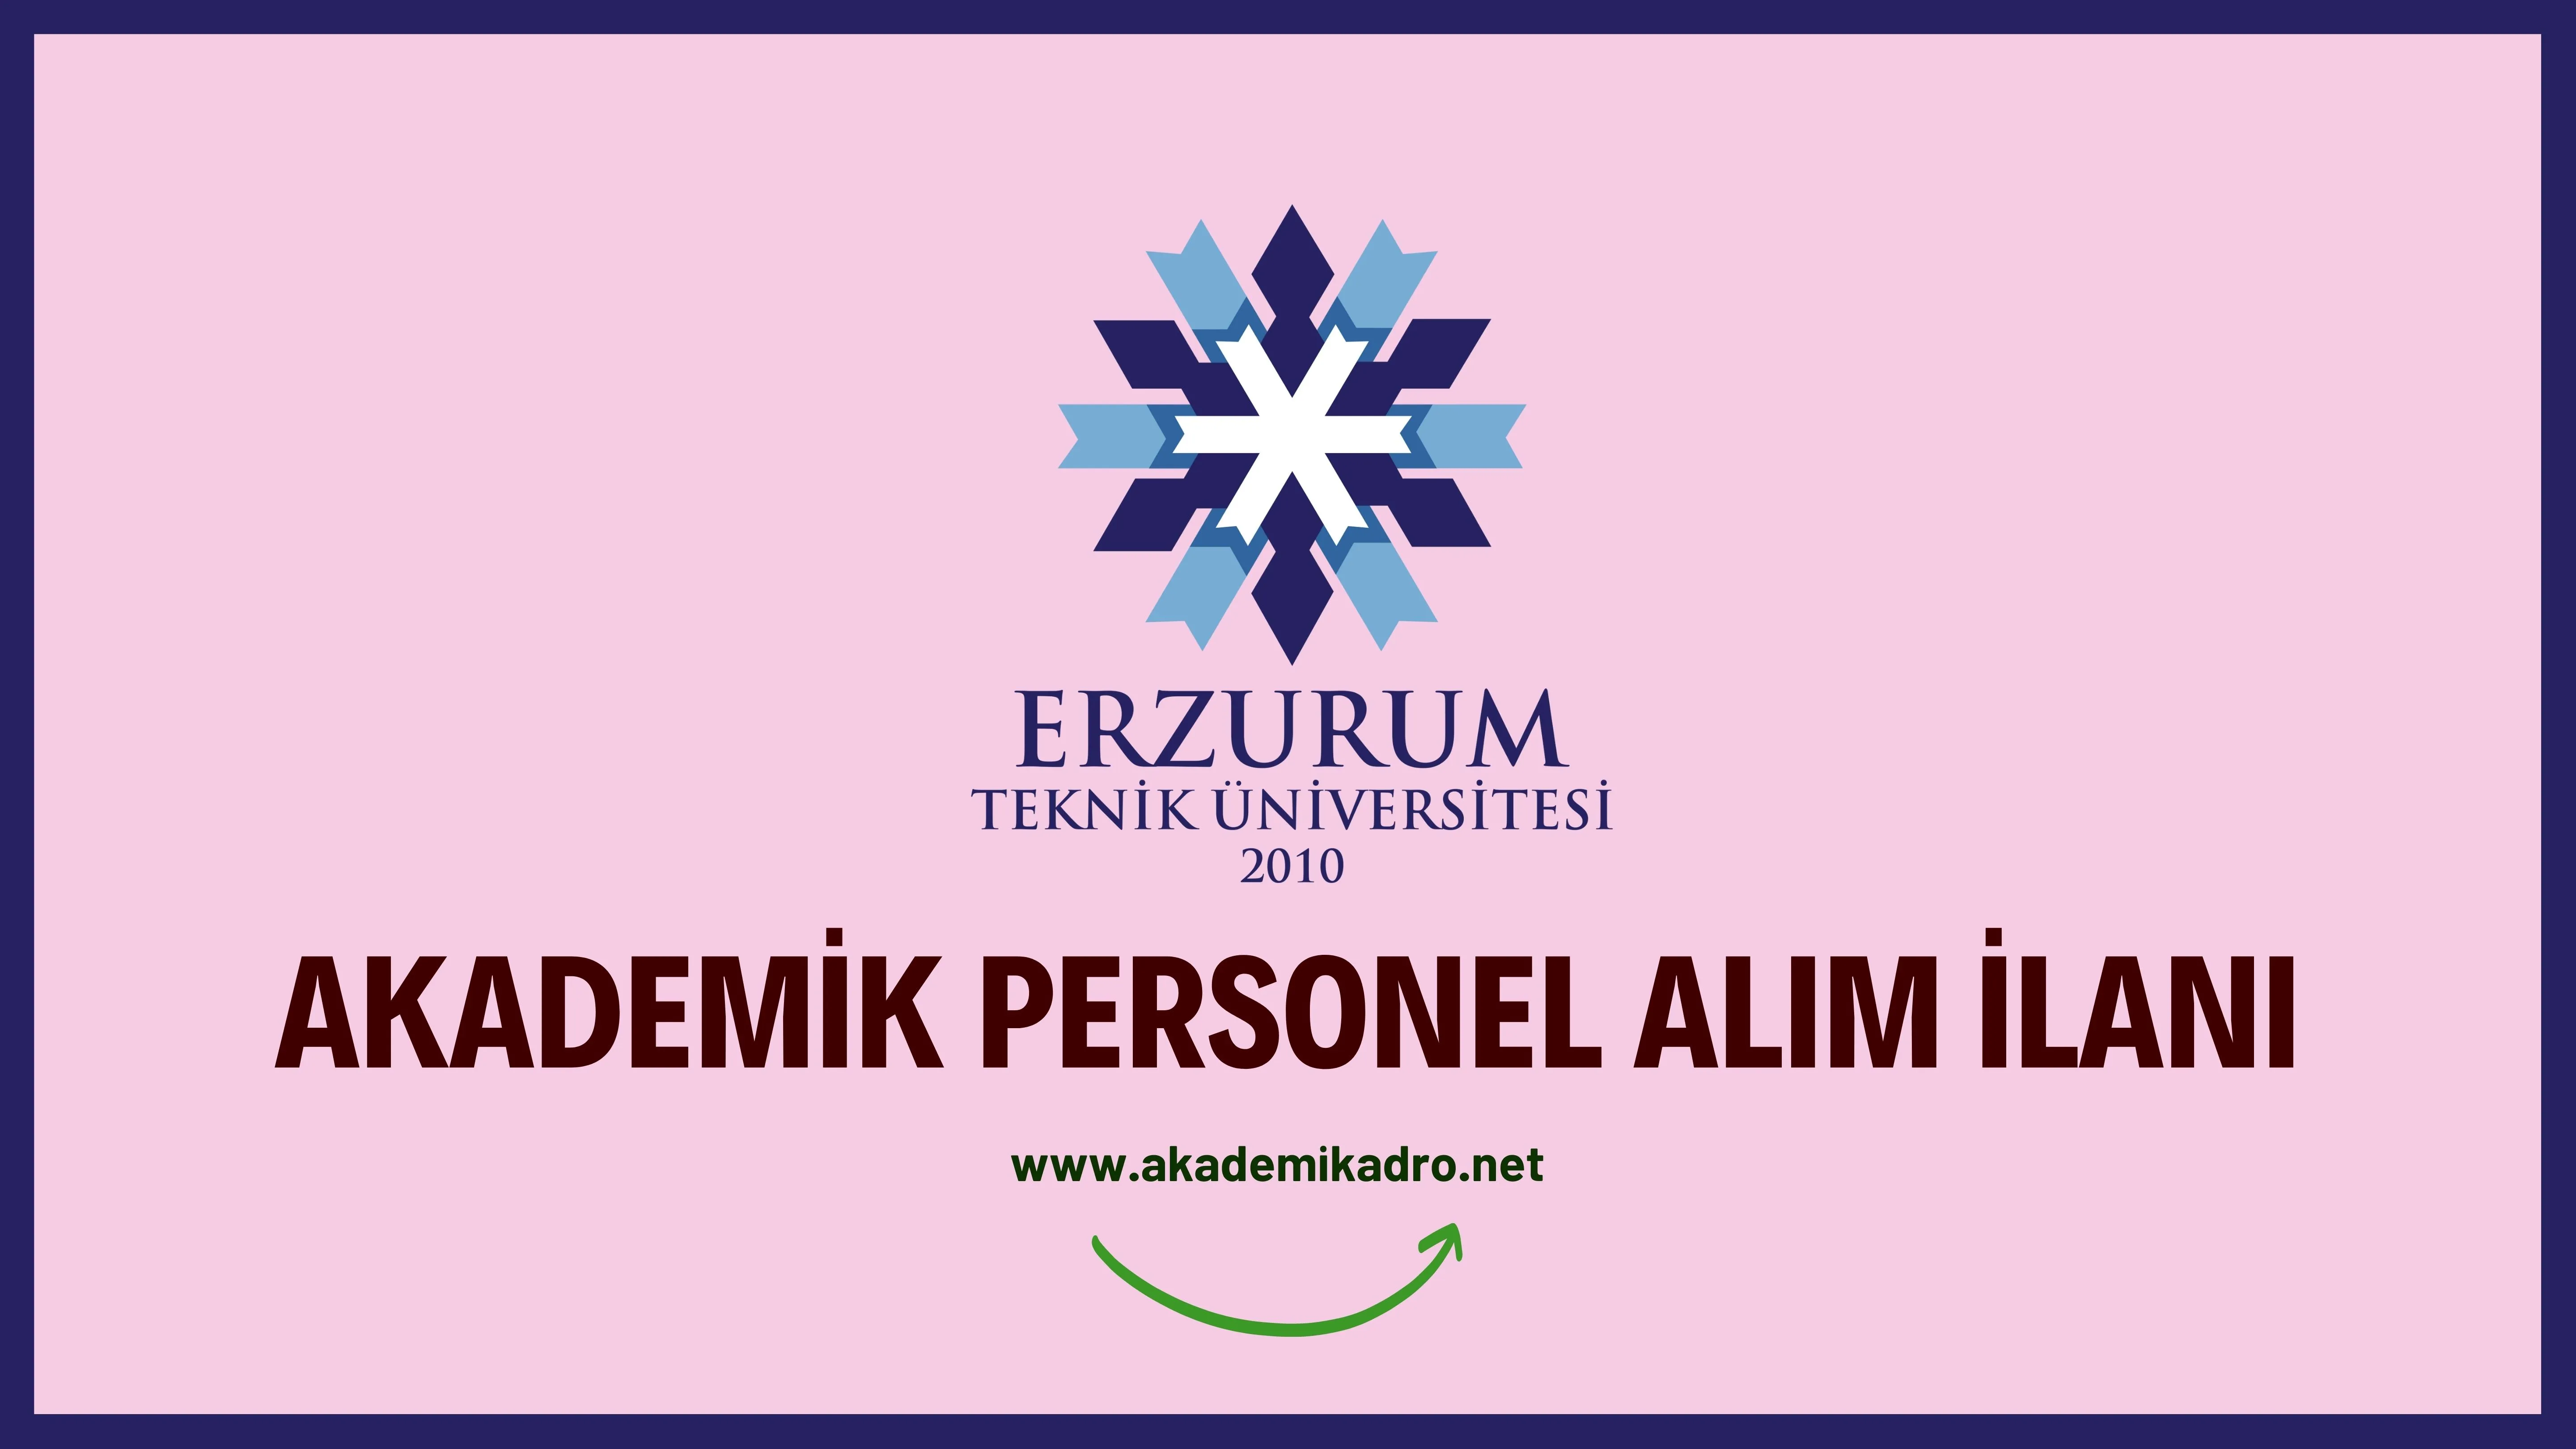 Erzurum Teknik Üniversitesi 4 akademik personel alacak